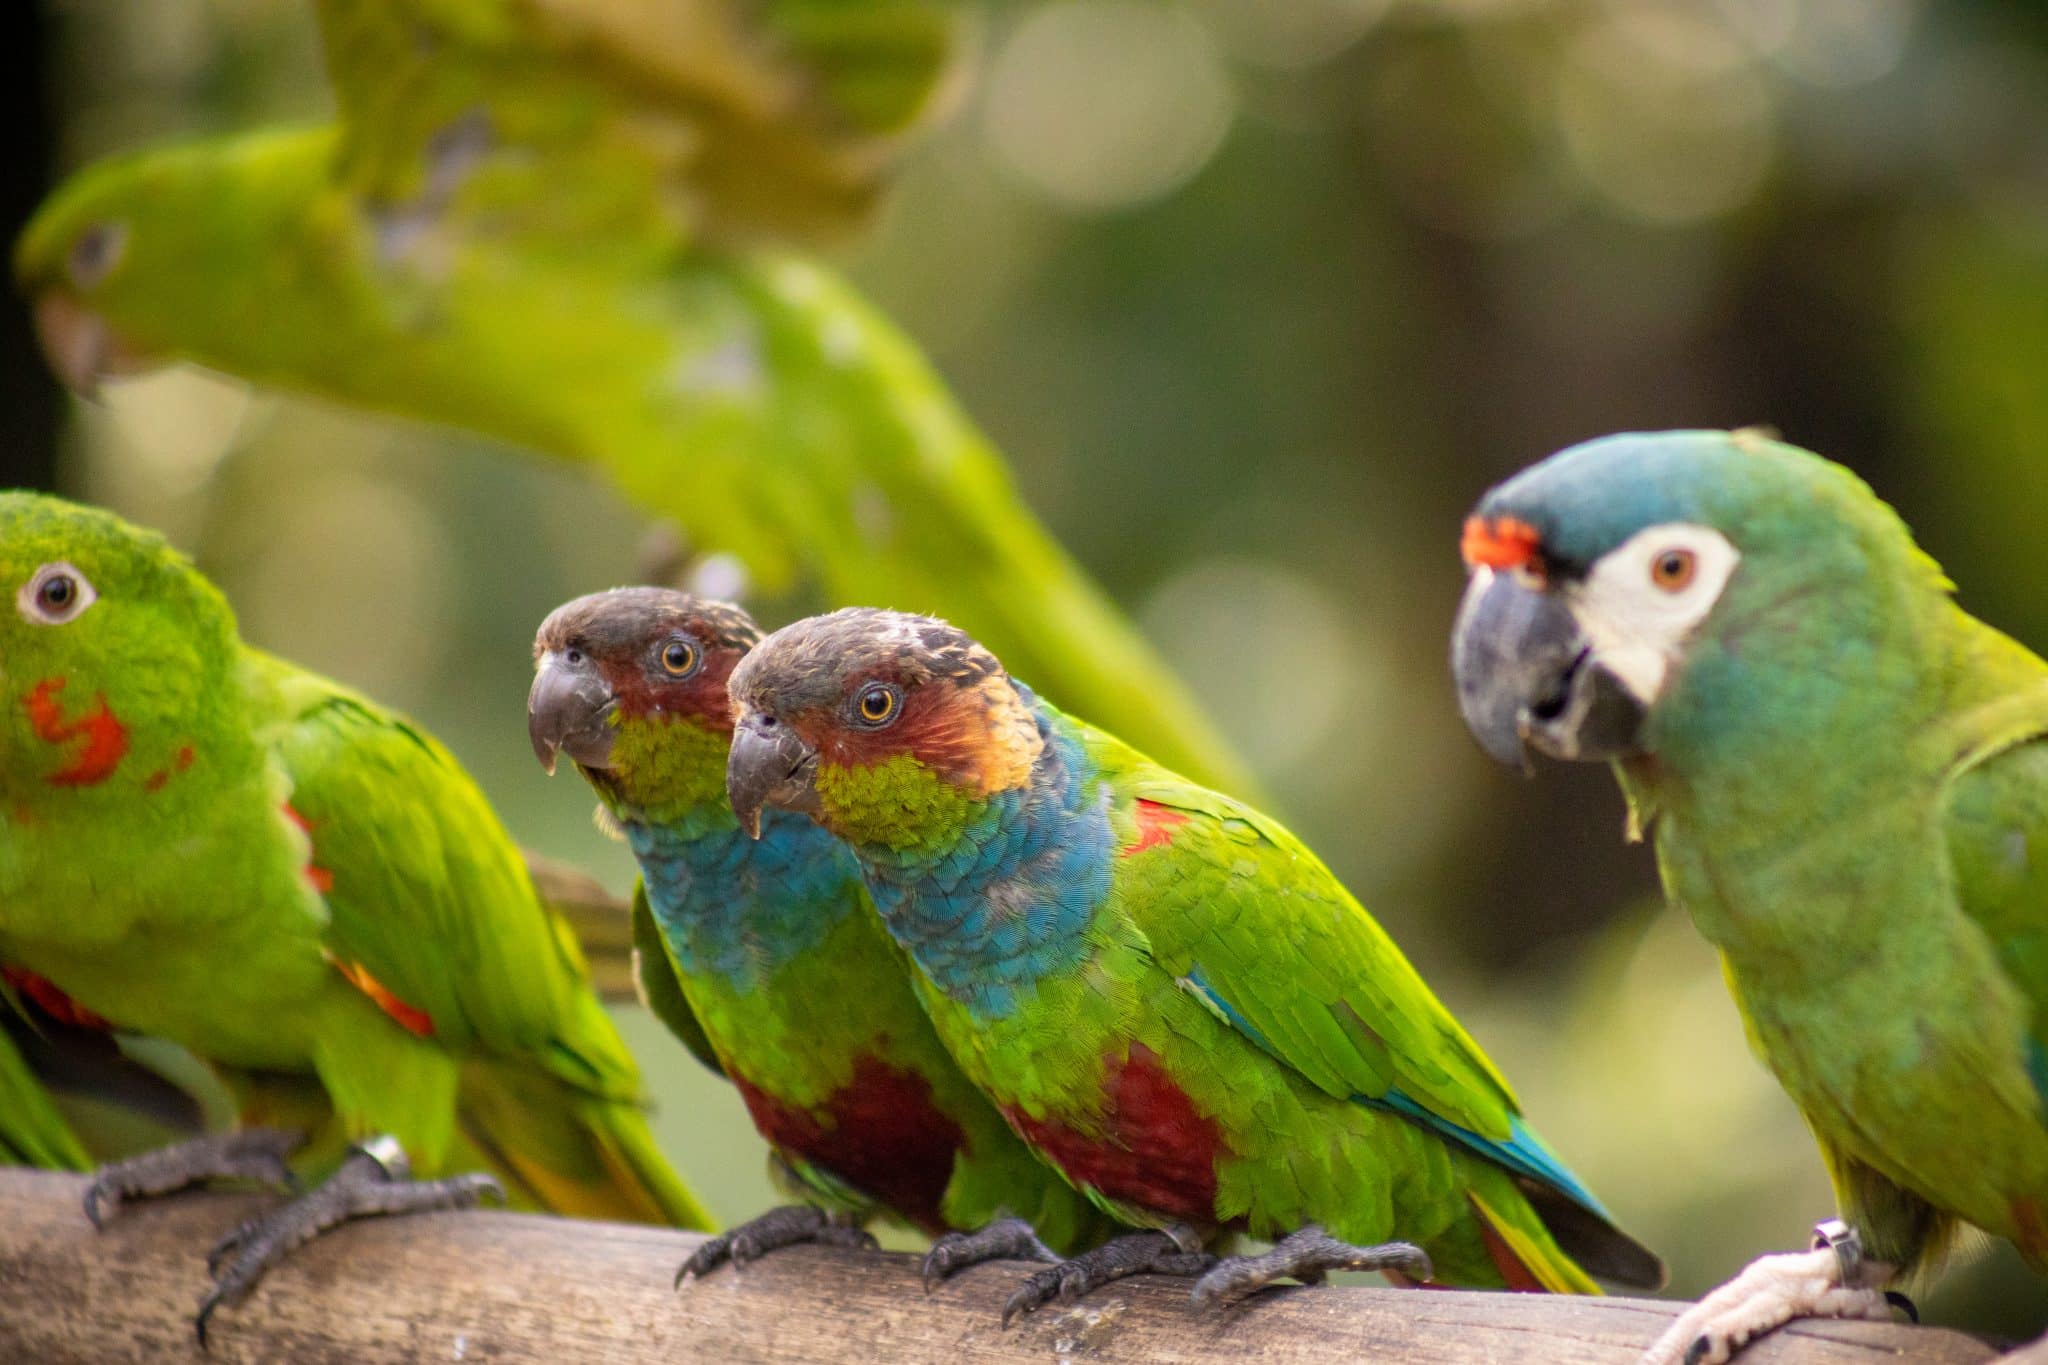 A imagem exibe três pequenos papagaios, cada um apresentando uma vibrante mistura de verde, azul, vermelho e amarelo em suas penas, possivelmente lorikeets ou uma espécie similar. Eles estão empoleirados em um galho, com o foco principal nos dois da frente, que olham curiosamente para algo fora do quadro, enquanto o terceiro, ao fundo, parece observar algo fora de vista. O cenário é natural e bem iluminado, sugerindo um habitat em um parque de aves, onde os visitantes podem apreciar essas aves coloridas de perto. A imagem capta a beleza e a variedade de cores dessas ave.